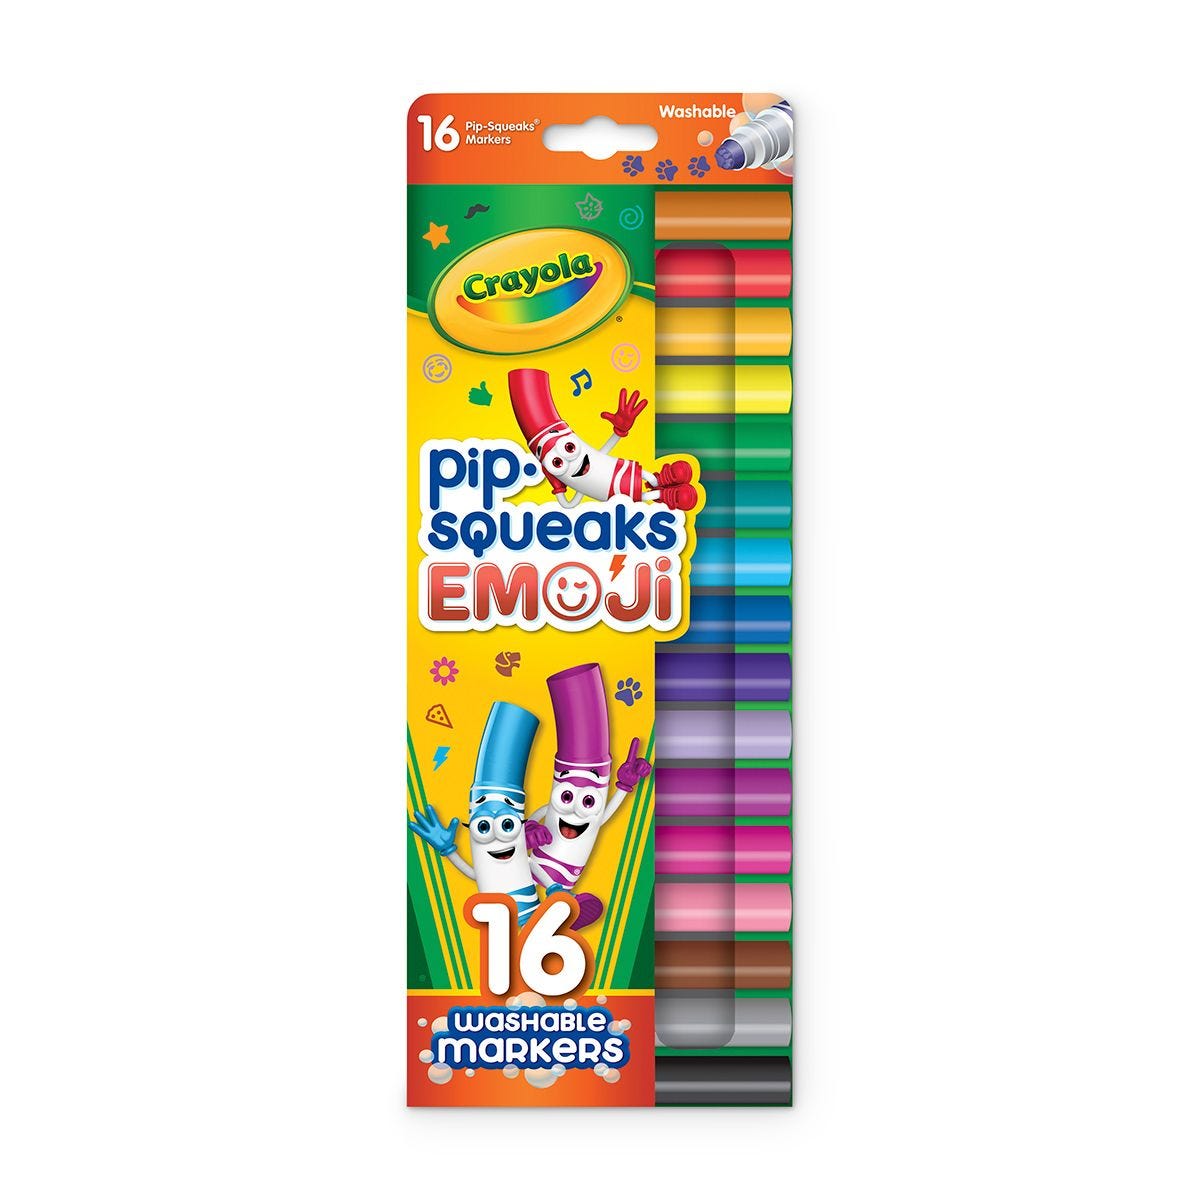  Crayola Emoji Maker,Stamp Marker Maker, Art Activity andArt  Supplies, for Kids, Easy Craft for Kids : Toys & Games